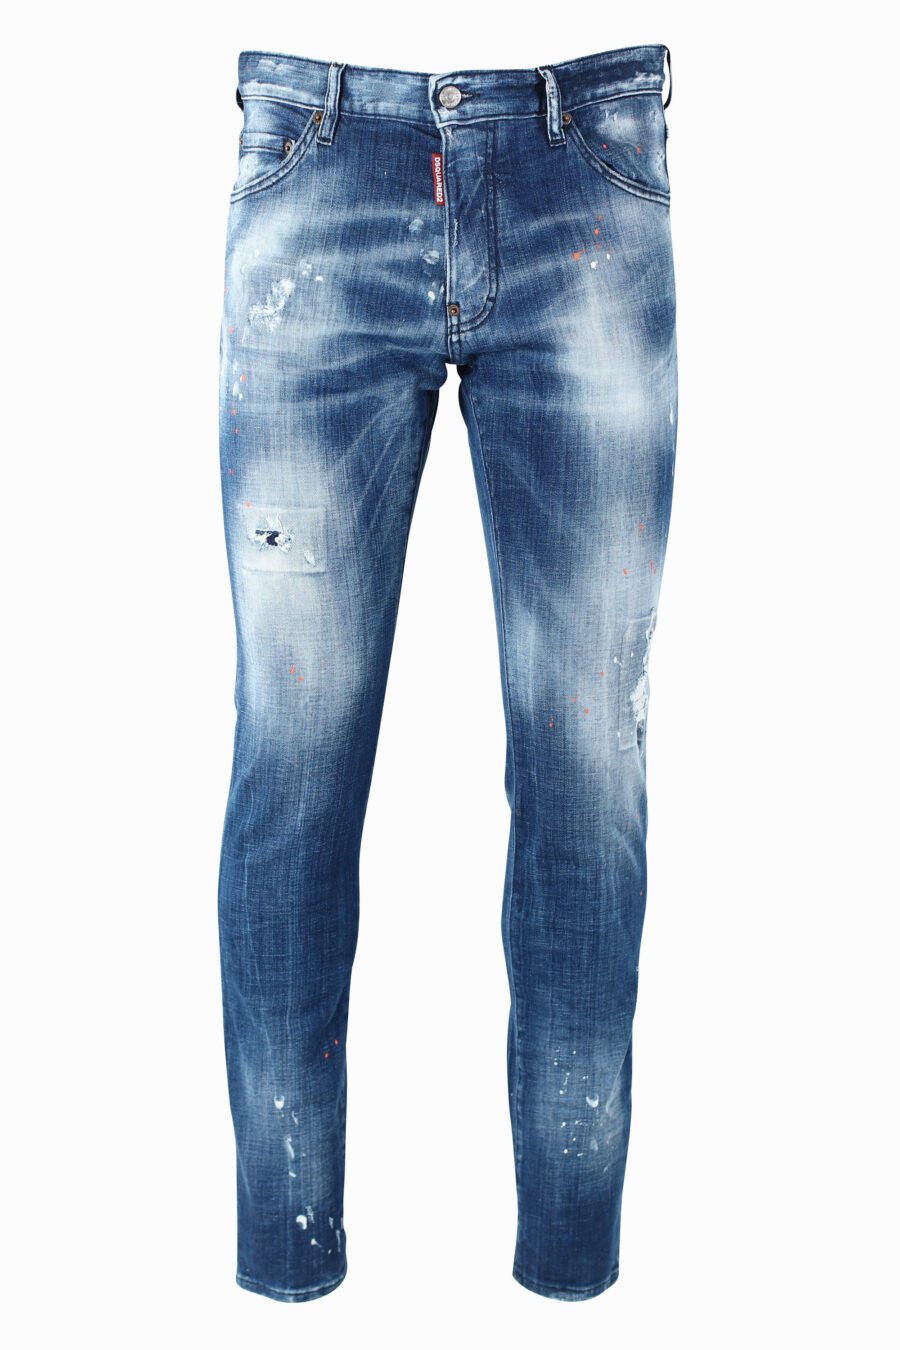 Pantalón vaquero "Cool Guy" azul semidesgastado con semirotos - IMG 0968